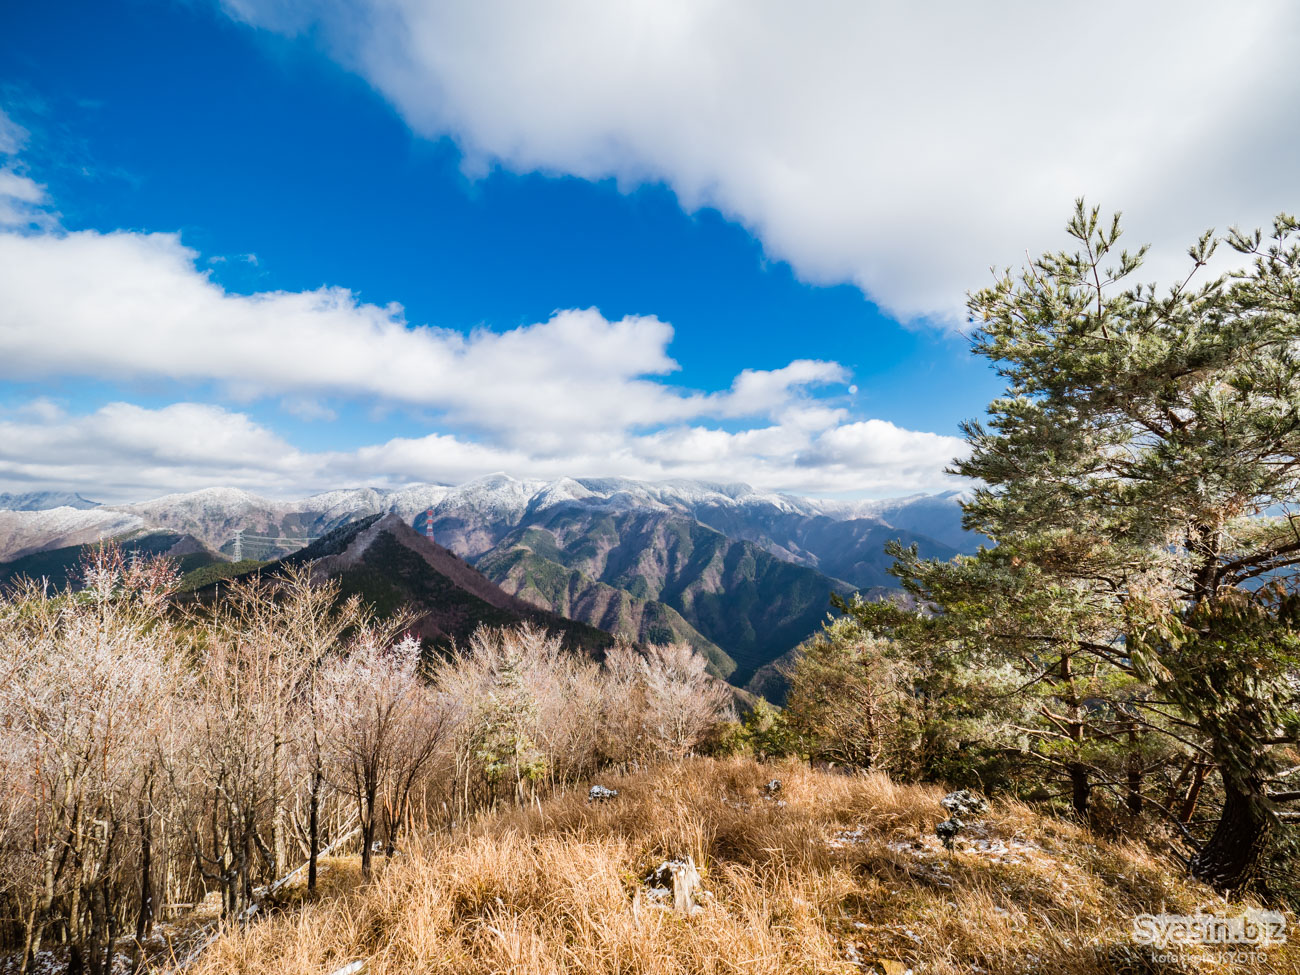 大峰・天和山 – 大峰山脈の主峰を一望できる展望の山